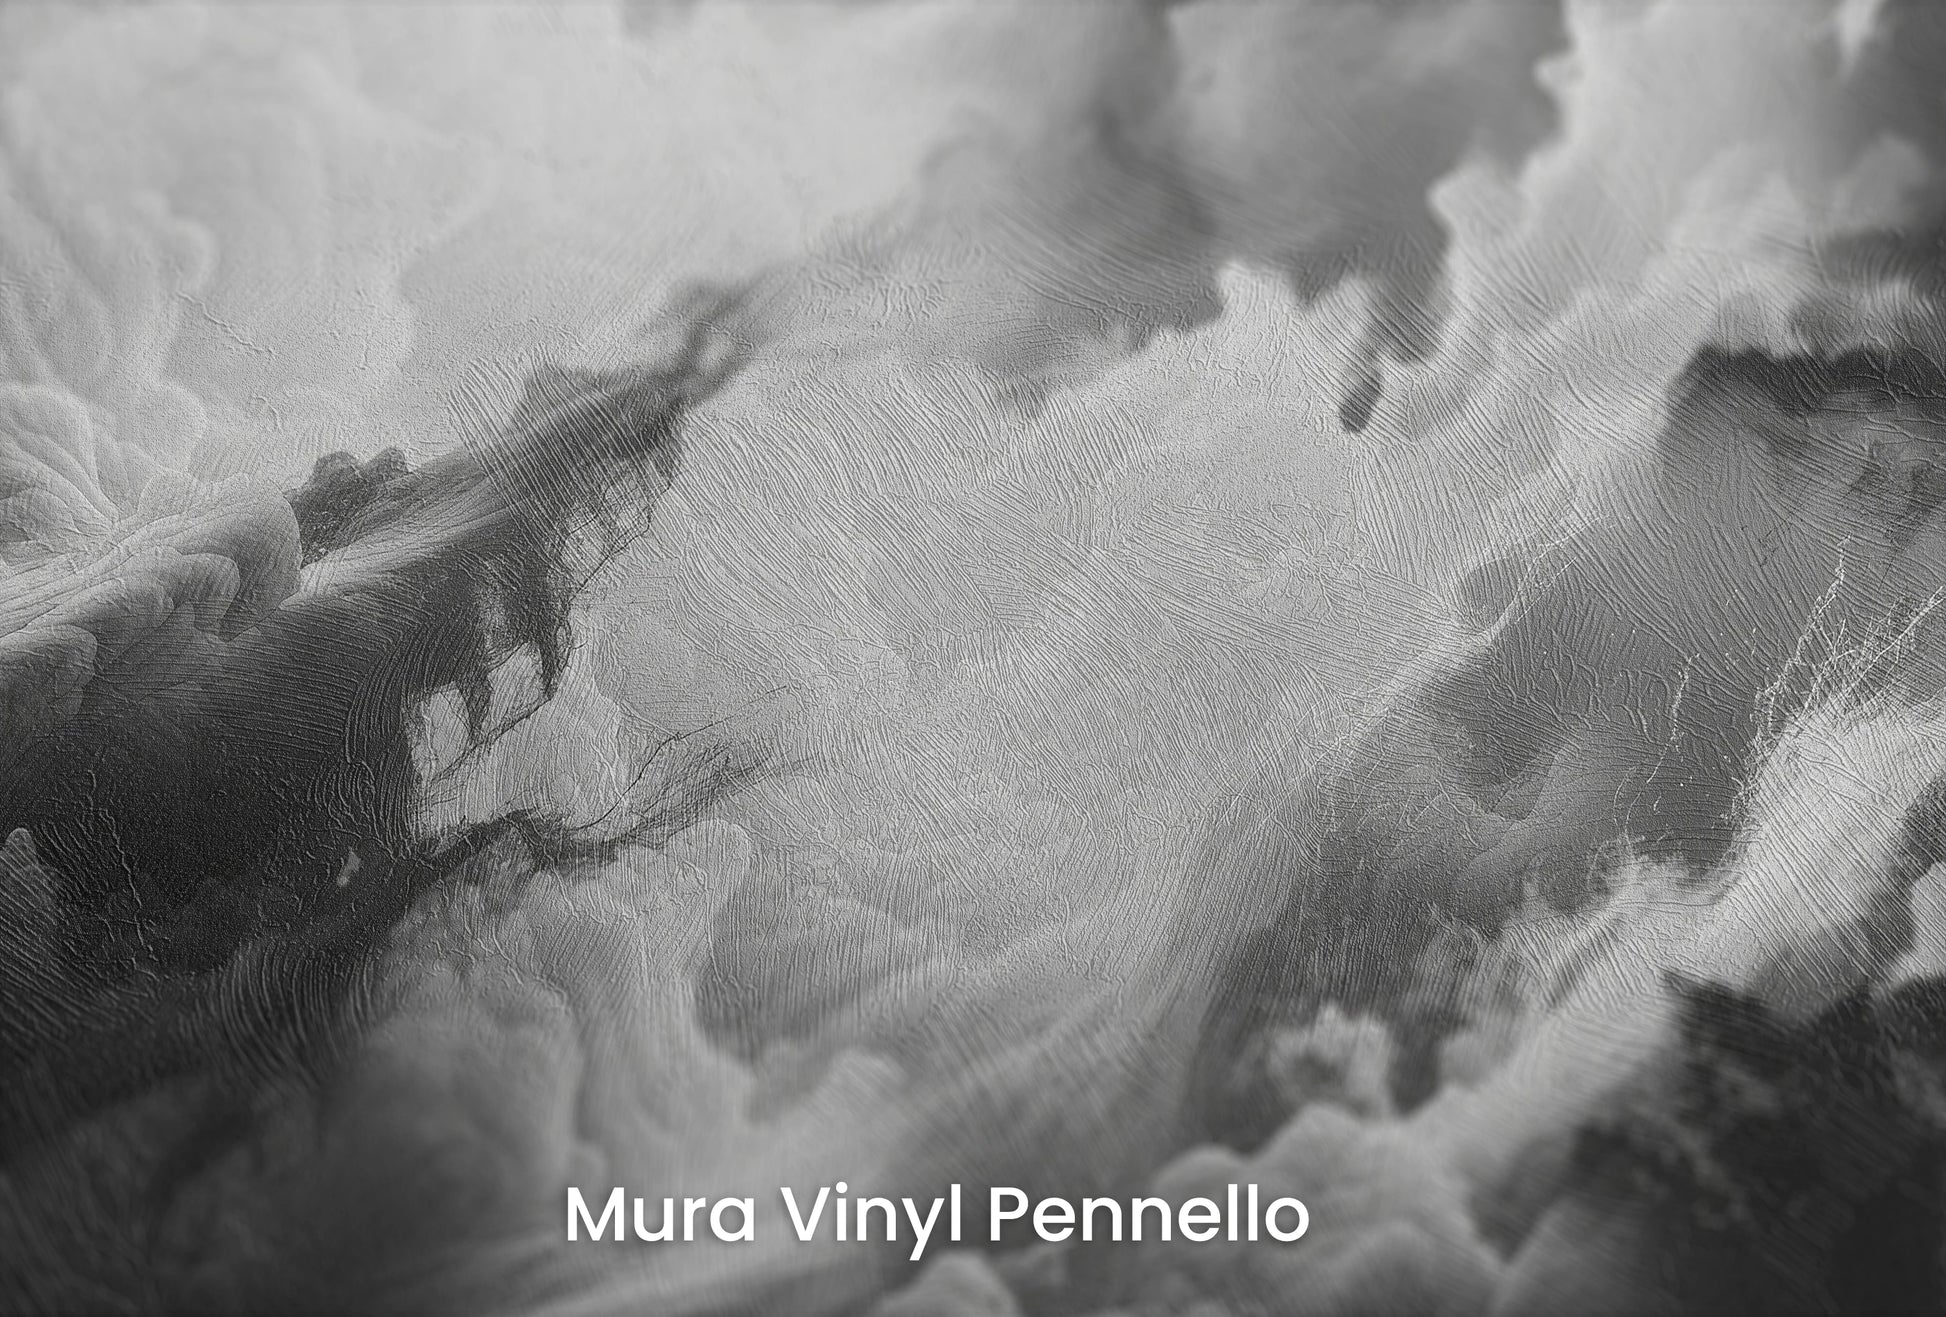 Zbliżenie na artystyczną fototapetę o nazwie Luminous Chaos na podłożu Mura Vinyl Pennello - faktura pociągnięć pędzla malarskiego.